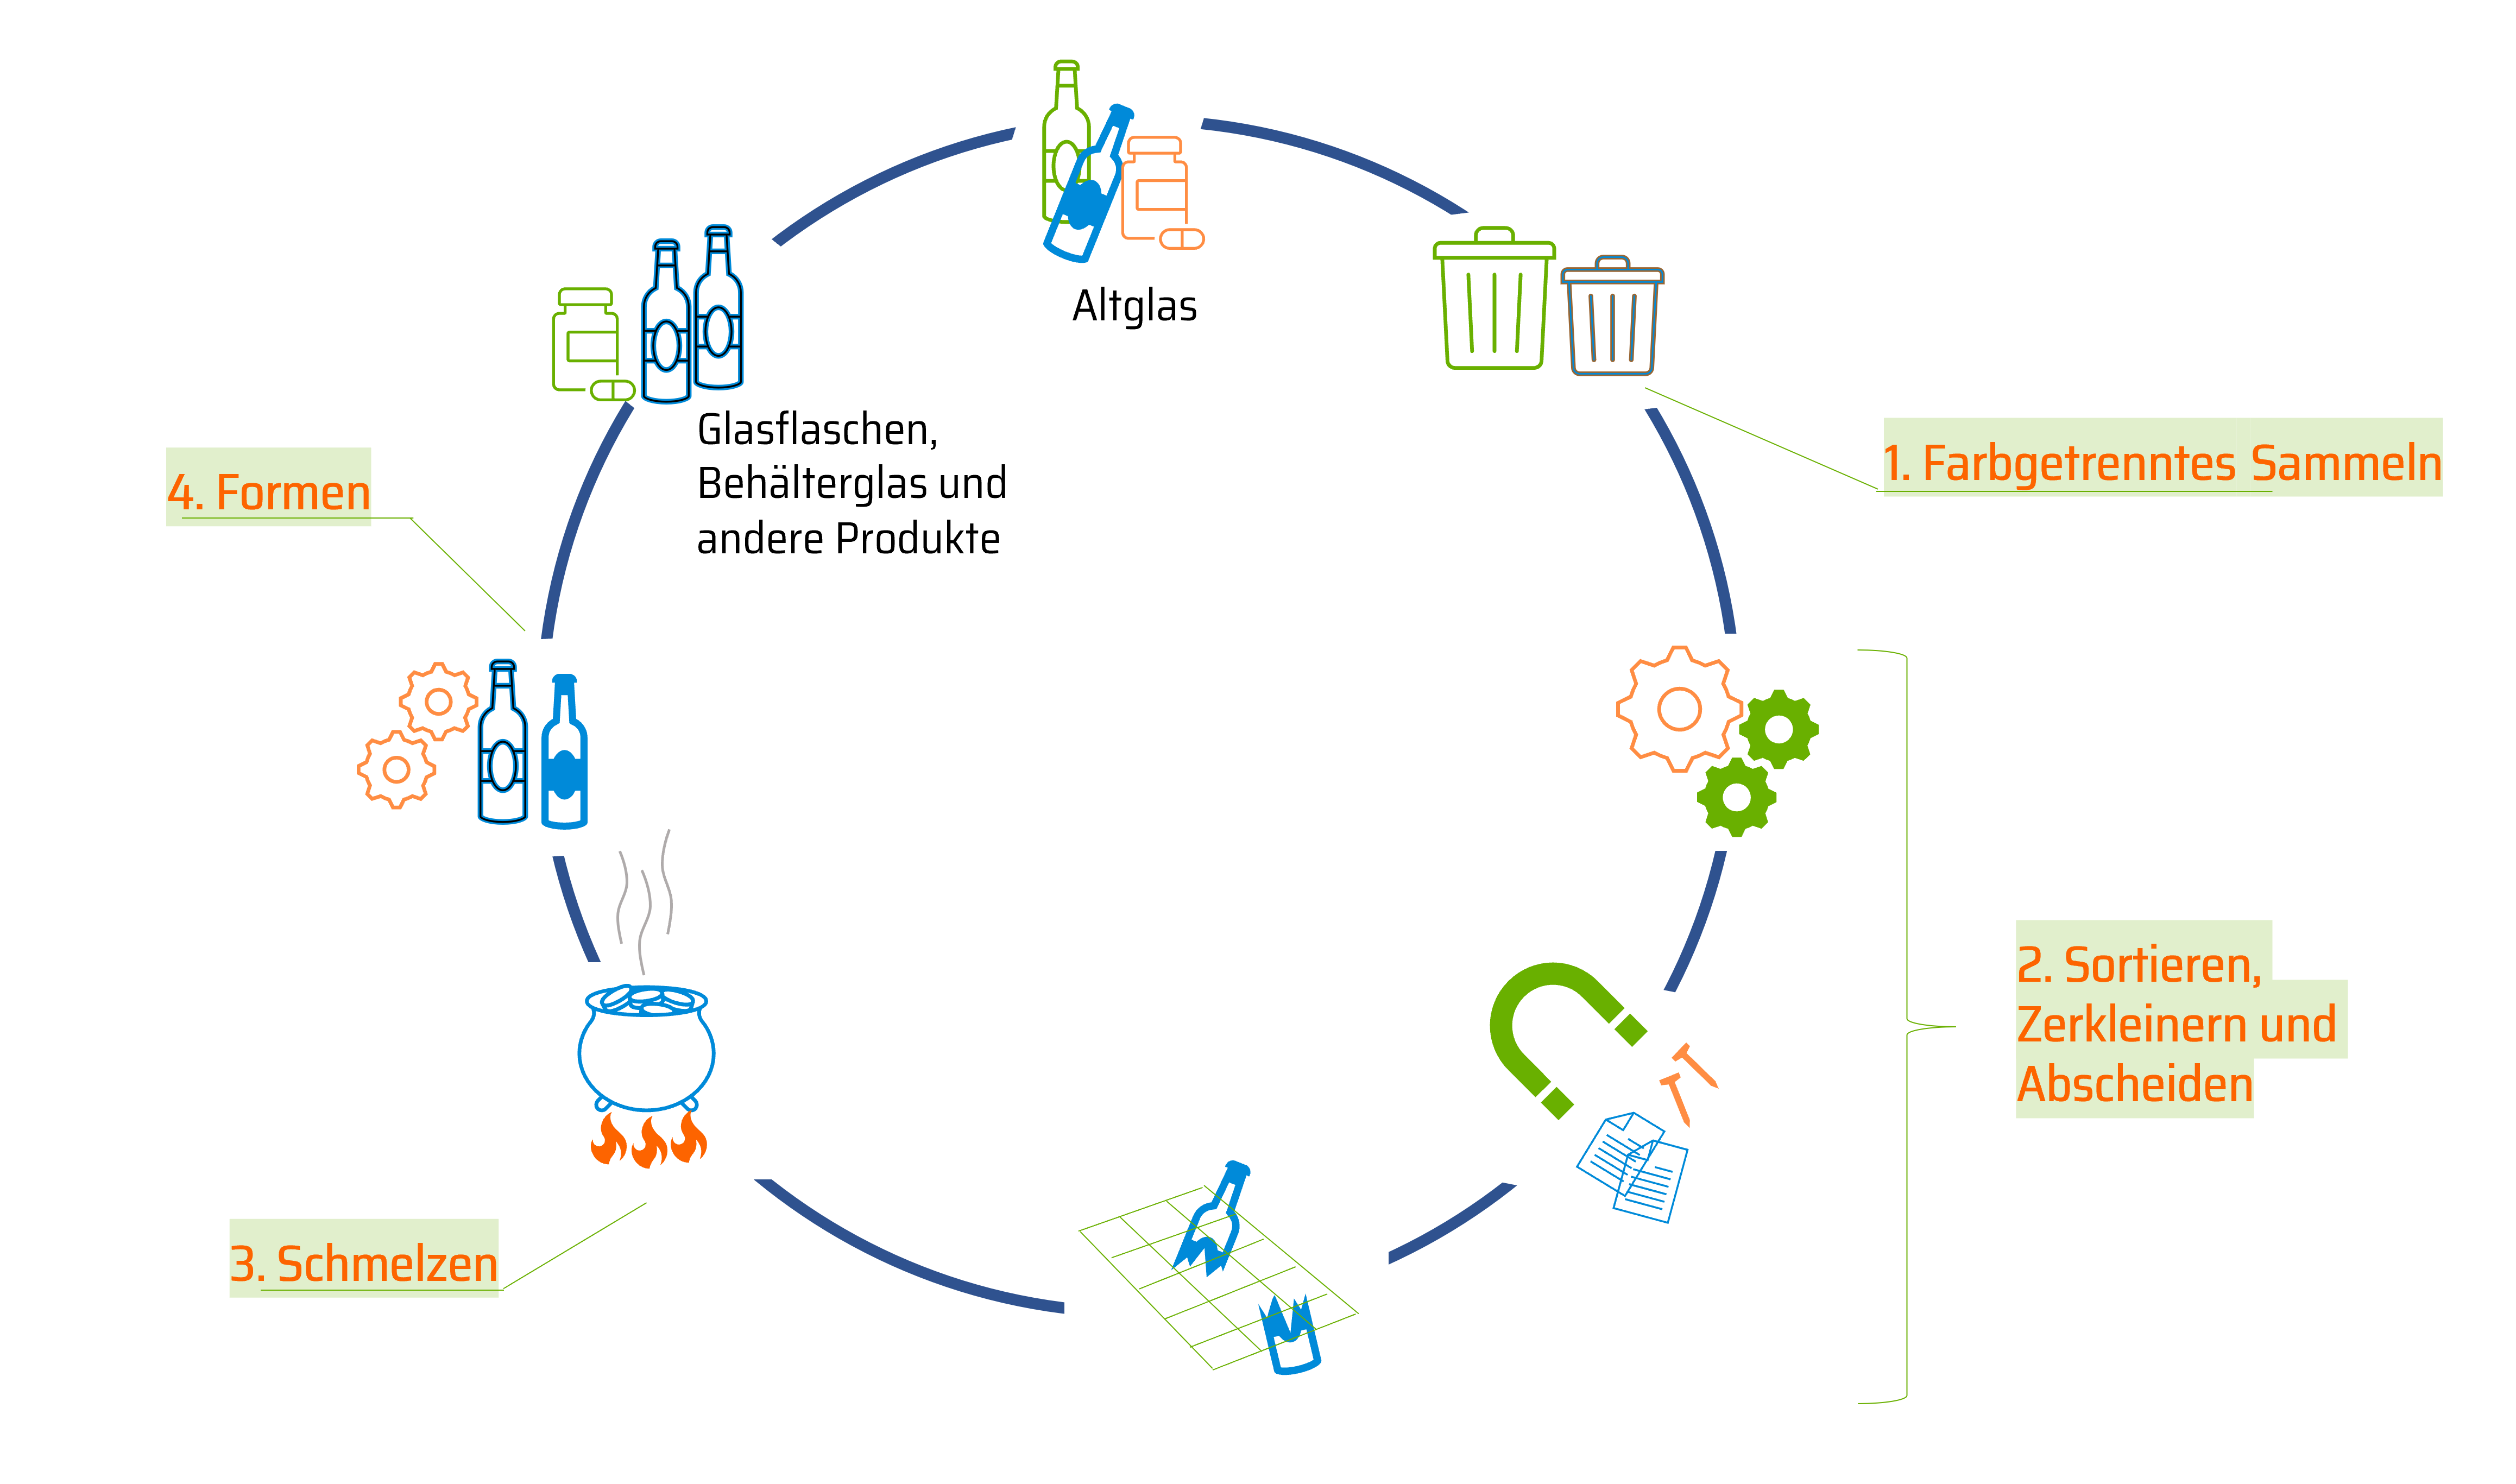 Diese Grafik zeigt mithilfe von Icons, die in einem Kreis angeordnet sind, den Recyclingkreislauf von Glas. 1. Farbgetrenntes Sammeln 2. Sortieren, Zerkleinern und Abscheiden 3. Schmelzen 4. Formen.